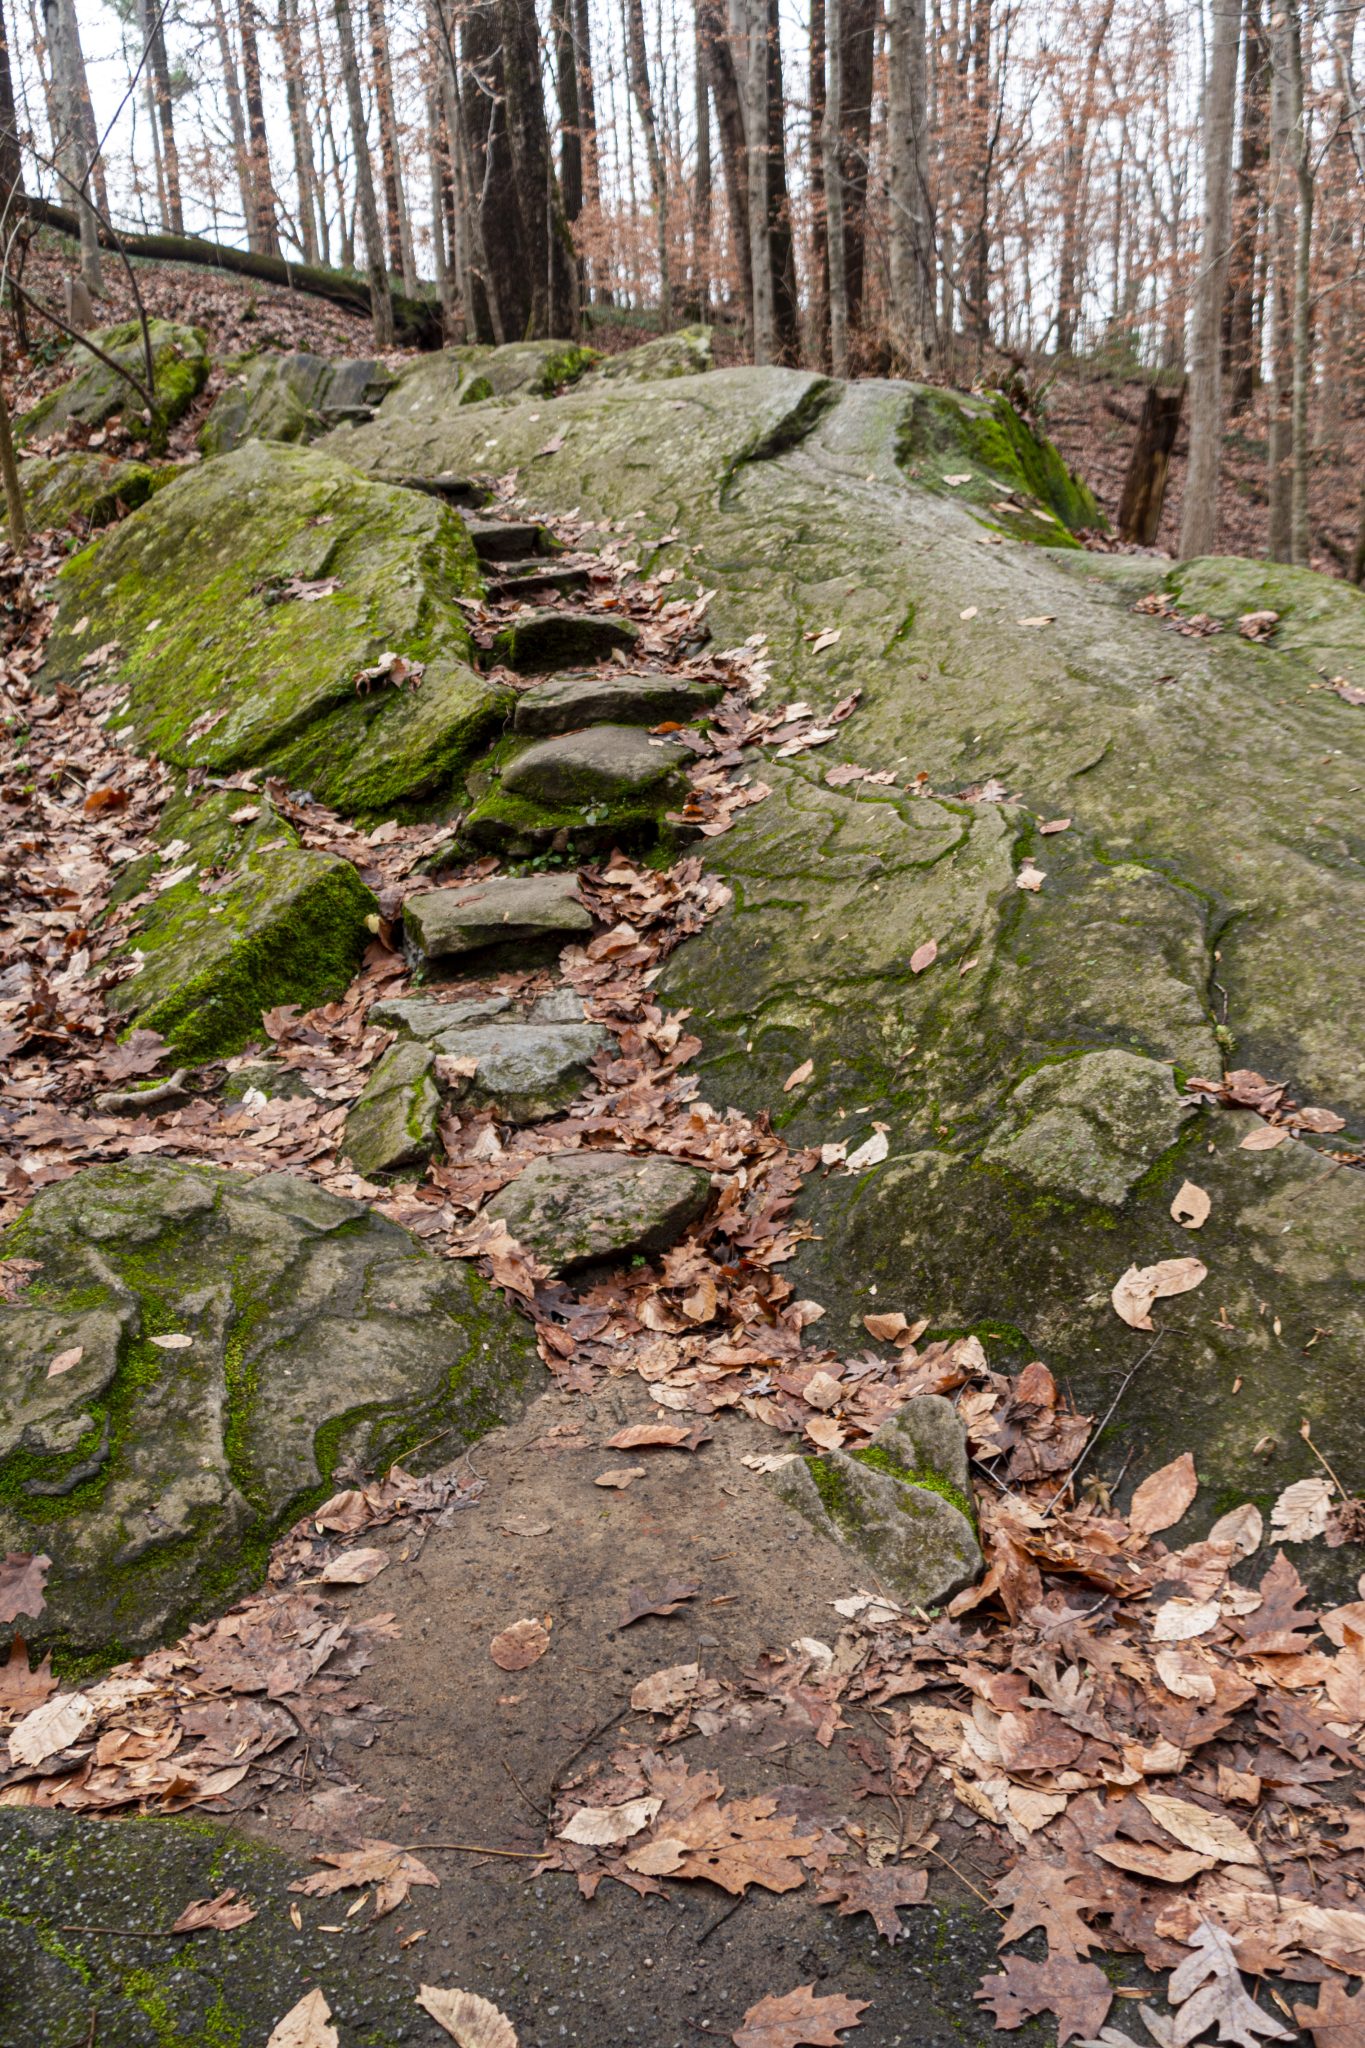 Stone steps in a rocky garden